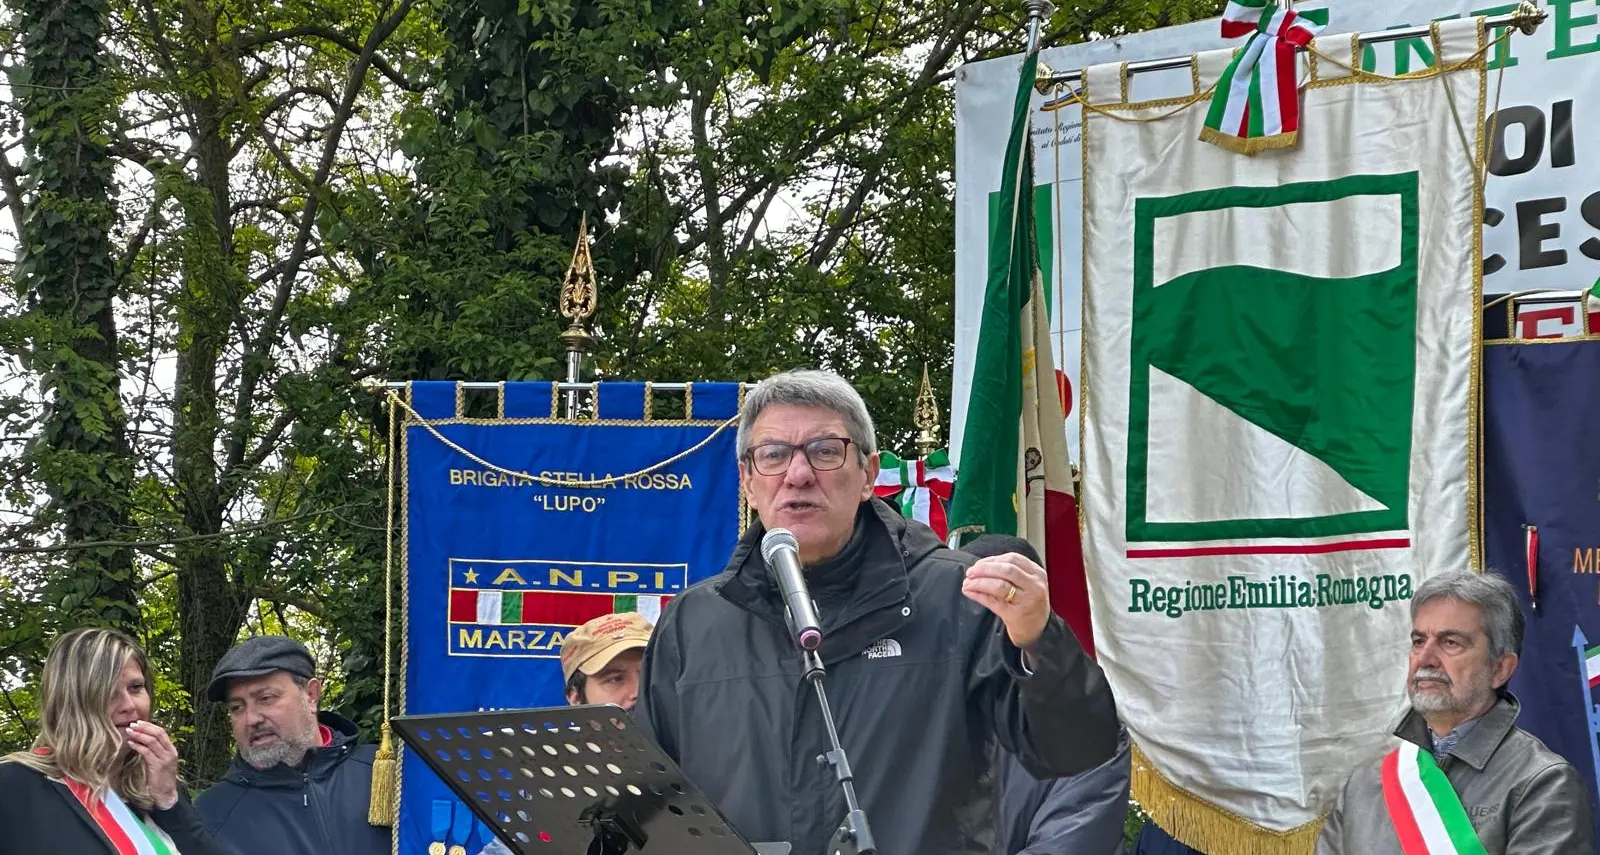 Landini a Marzabotto: “Qui per difendere la Costituzione antifascista”